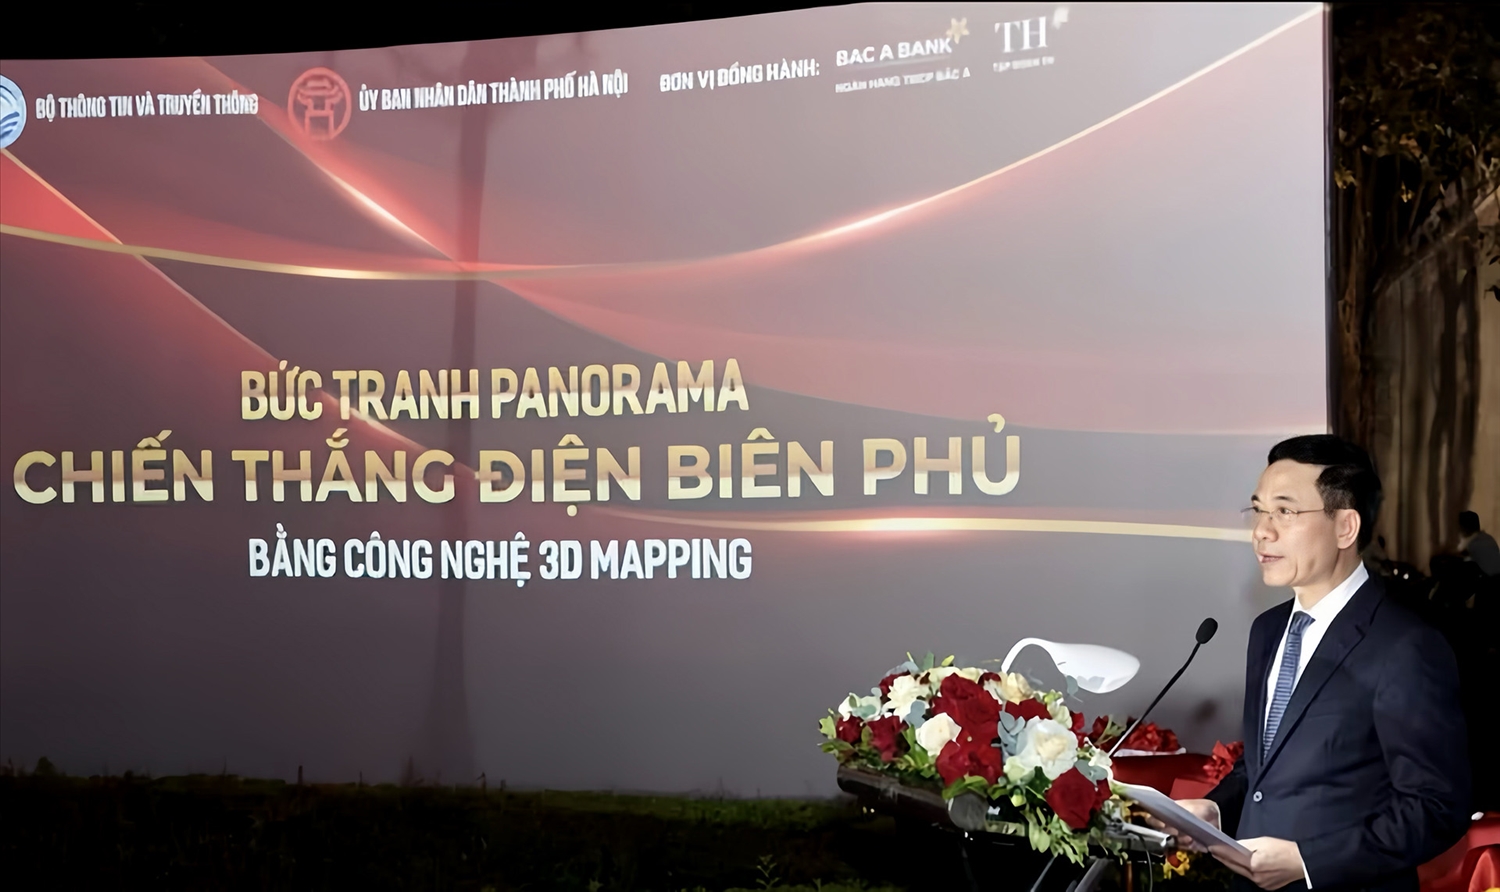 Chiếu tranh 3D lớn nhất Đông Nam Á về "Chiến dịch Điện Biên Phủ" 1